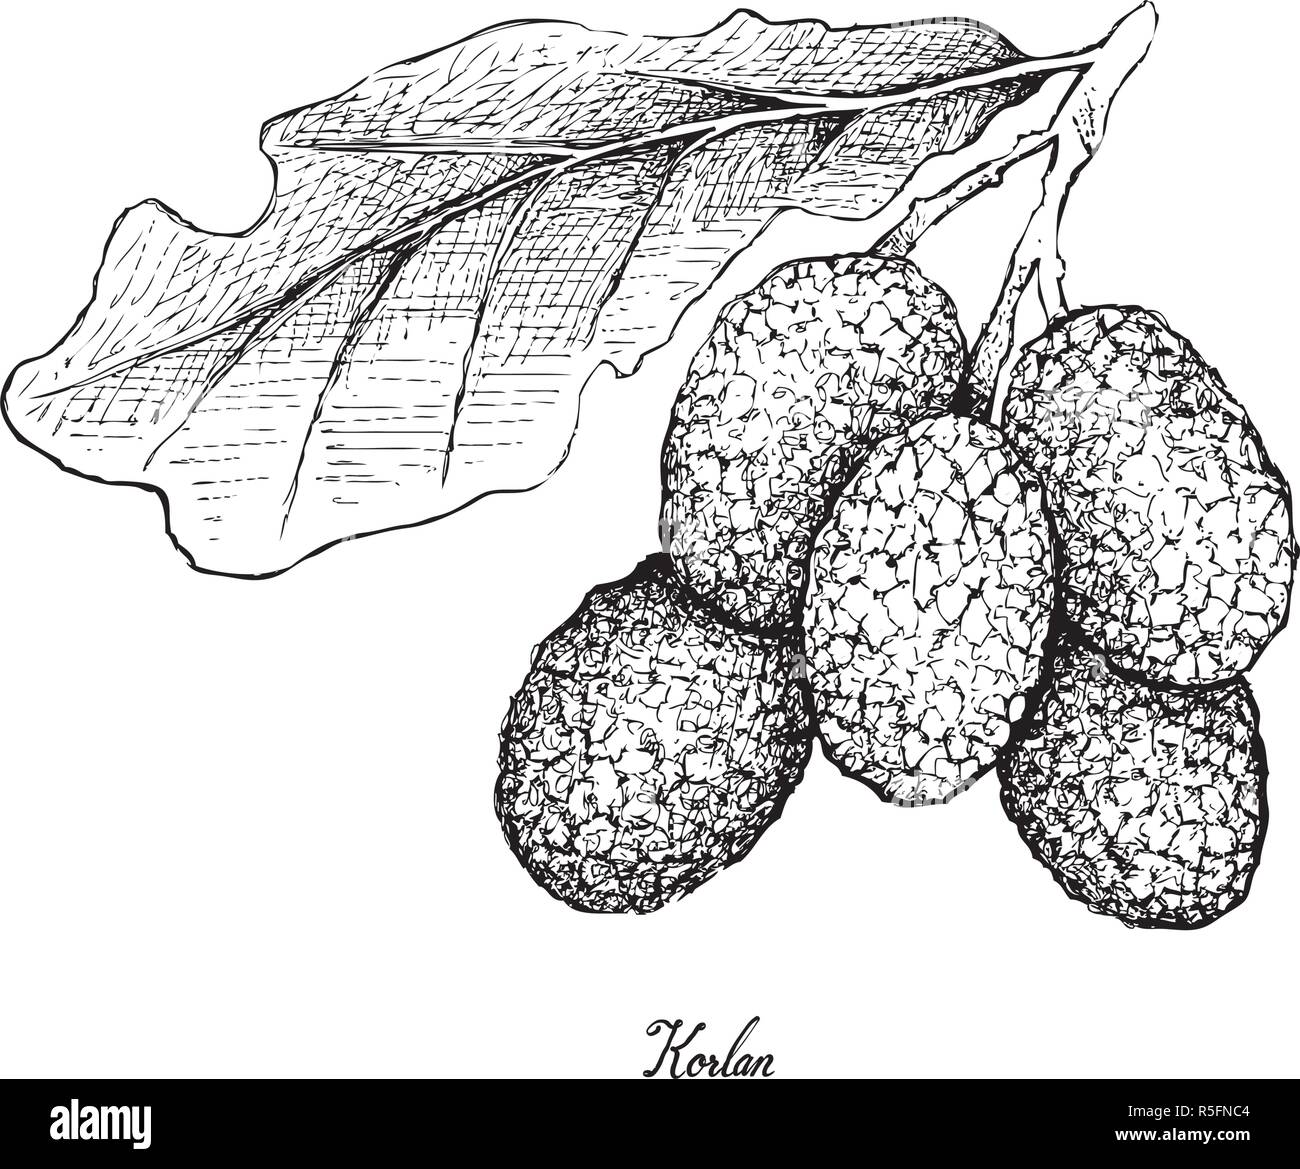 Fresh Fruits, Illustration of Hand Drawn Sketch Fresh Korlan or Nephelium Hypoleucum Fruits Isolated on White Background. Stock Vector